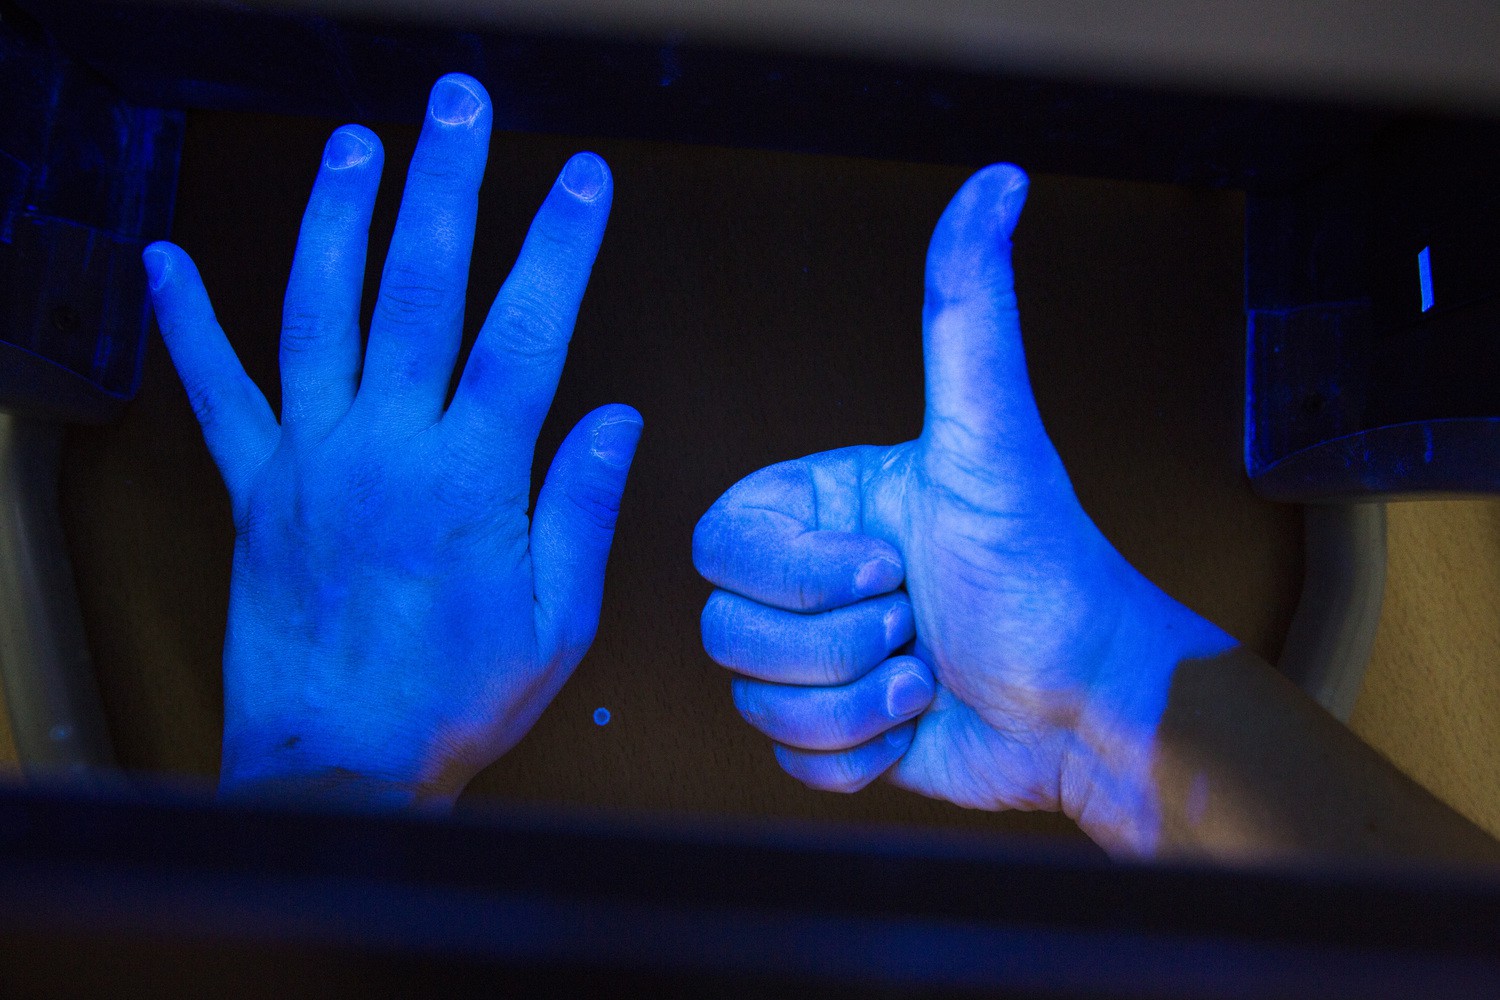 Hände waschen - einfach und effektiv: Unter UV-Licht wird deutlich, wie gründlich Hände gereinigt und desinfiziert worden sind.